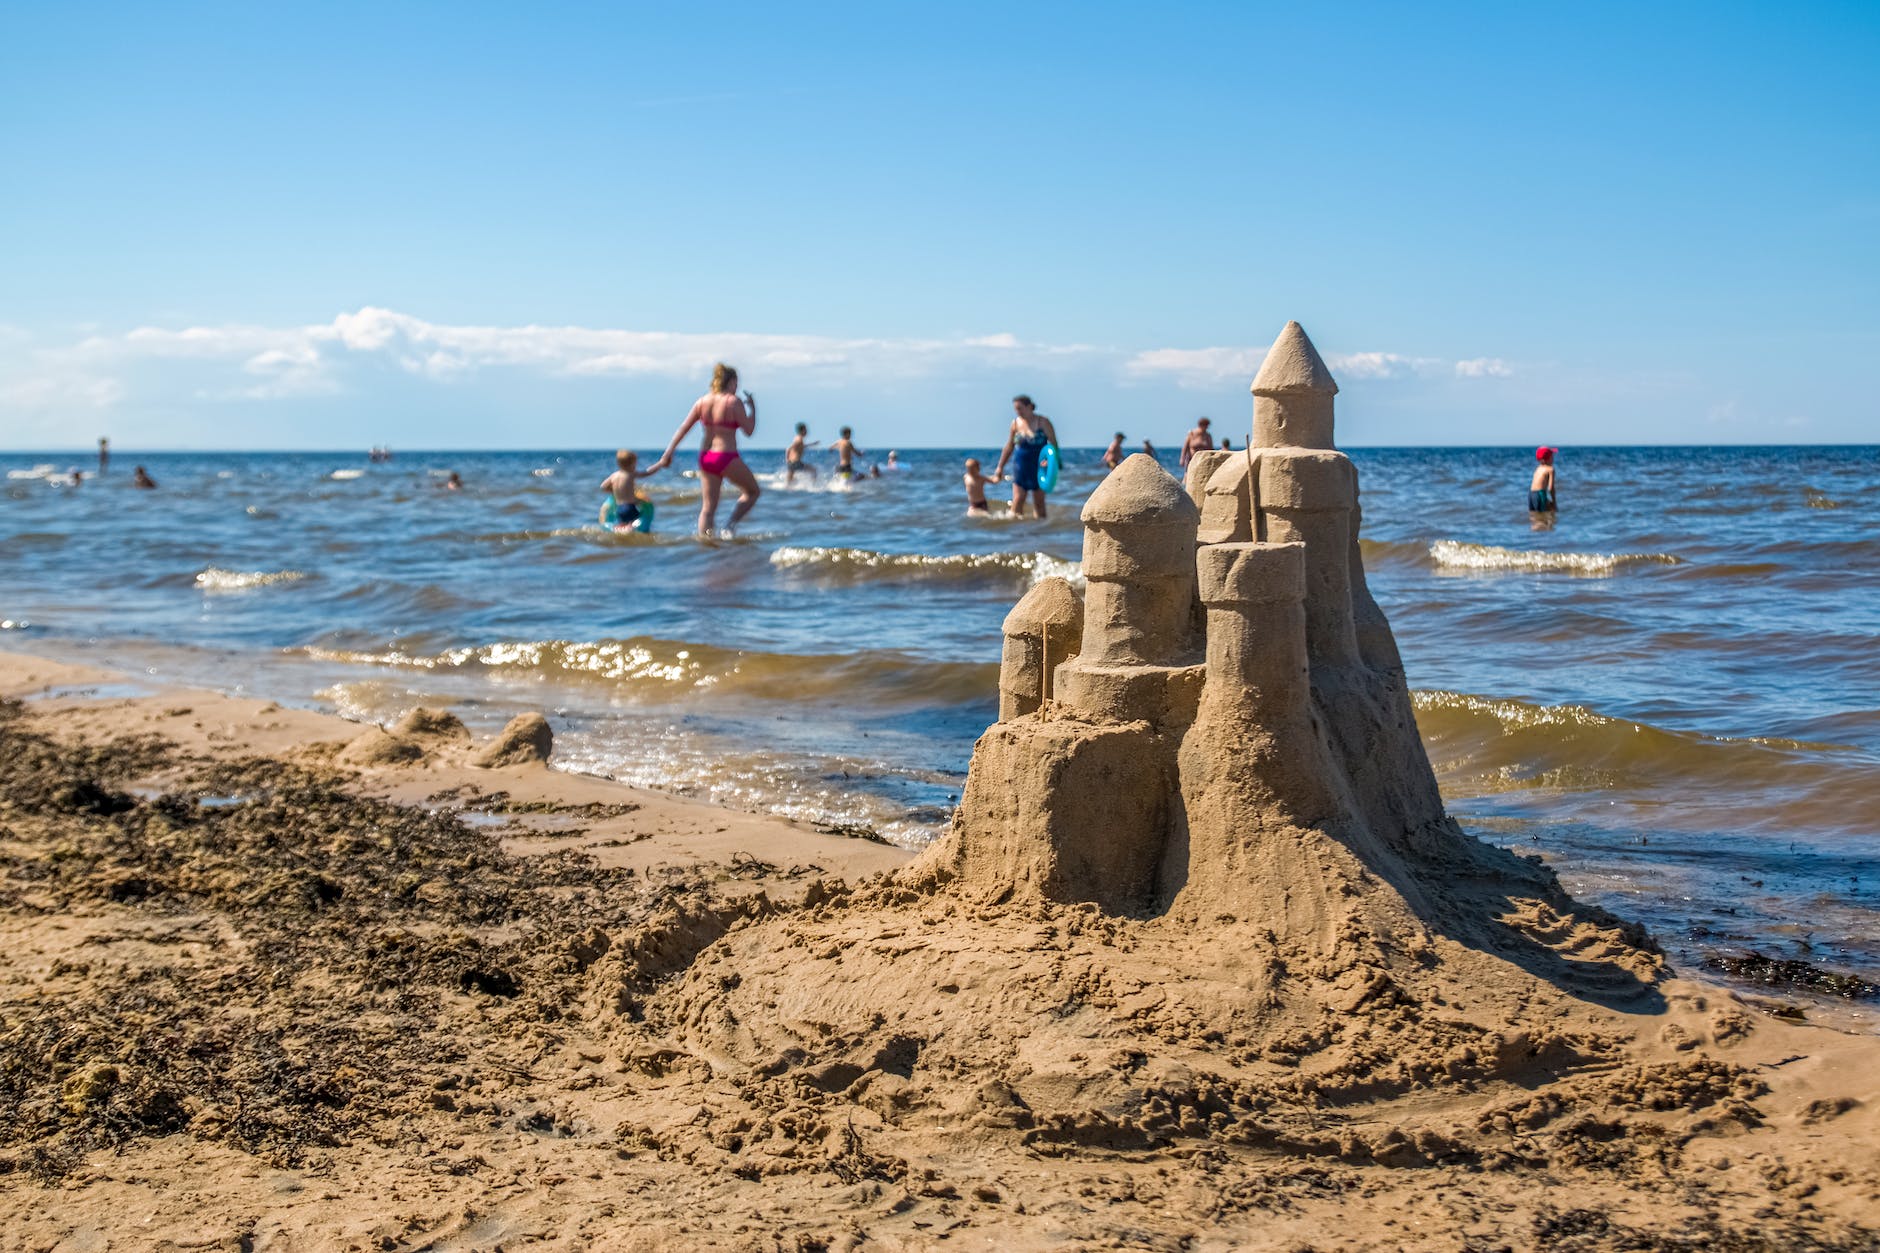 sandcastle built on sunny beach near waving sea